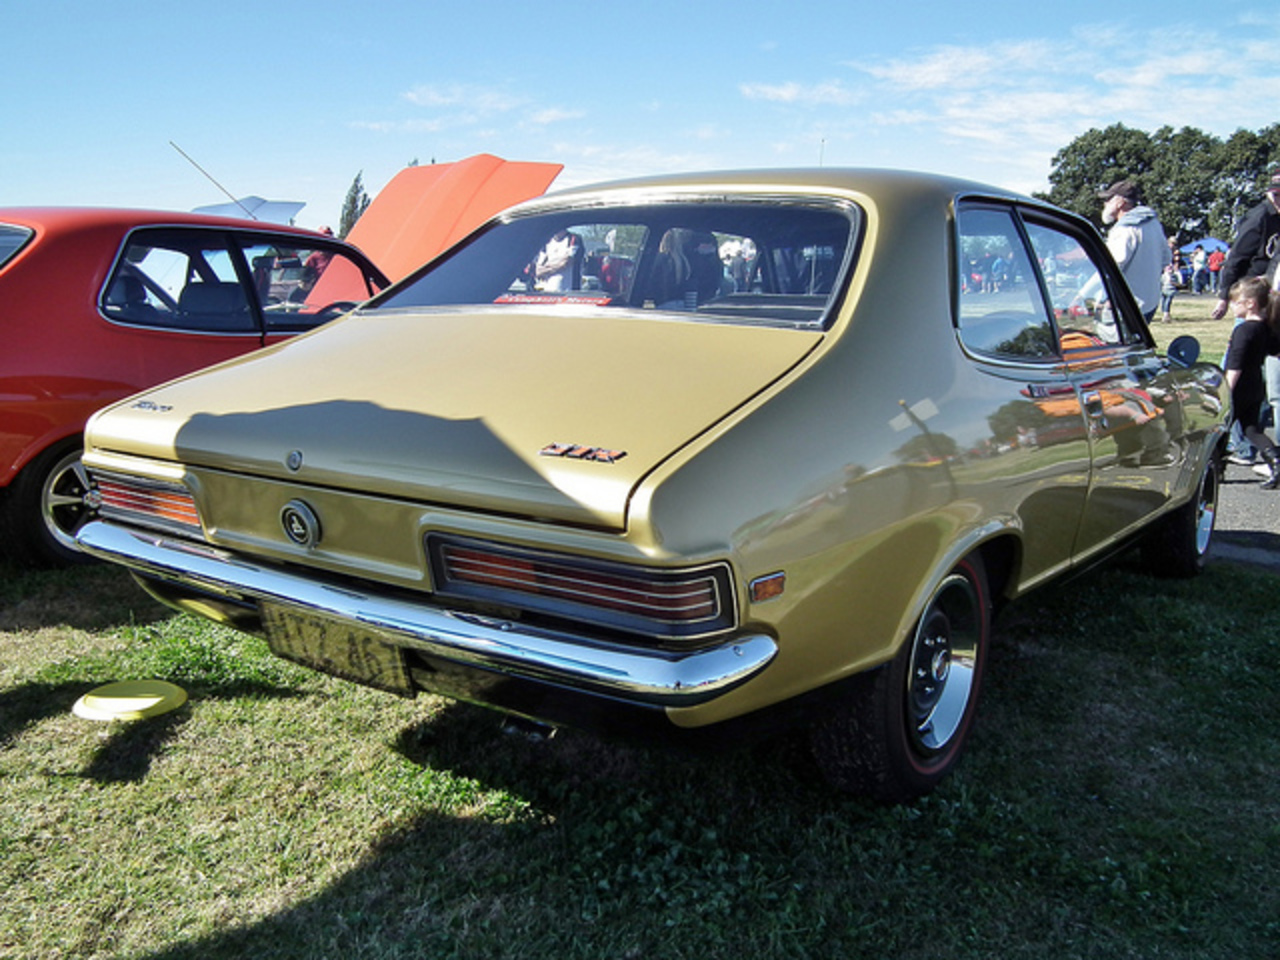 1971 Holden LC Torana GTR sedan | Flickr - Photo Sharing!